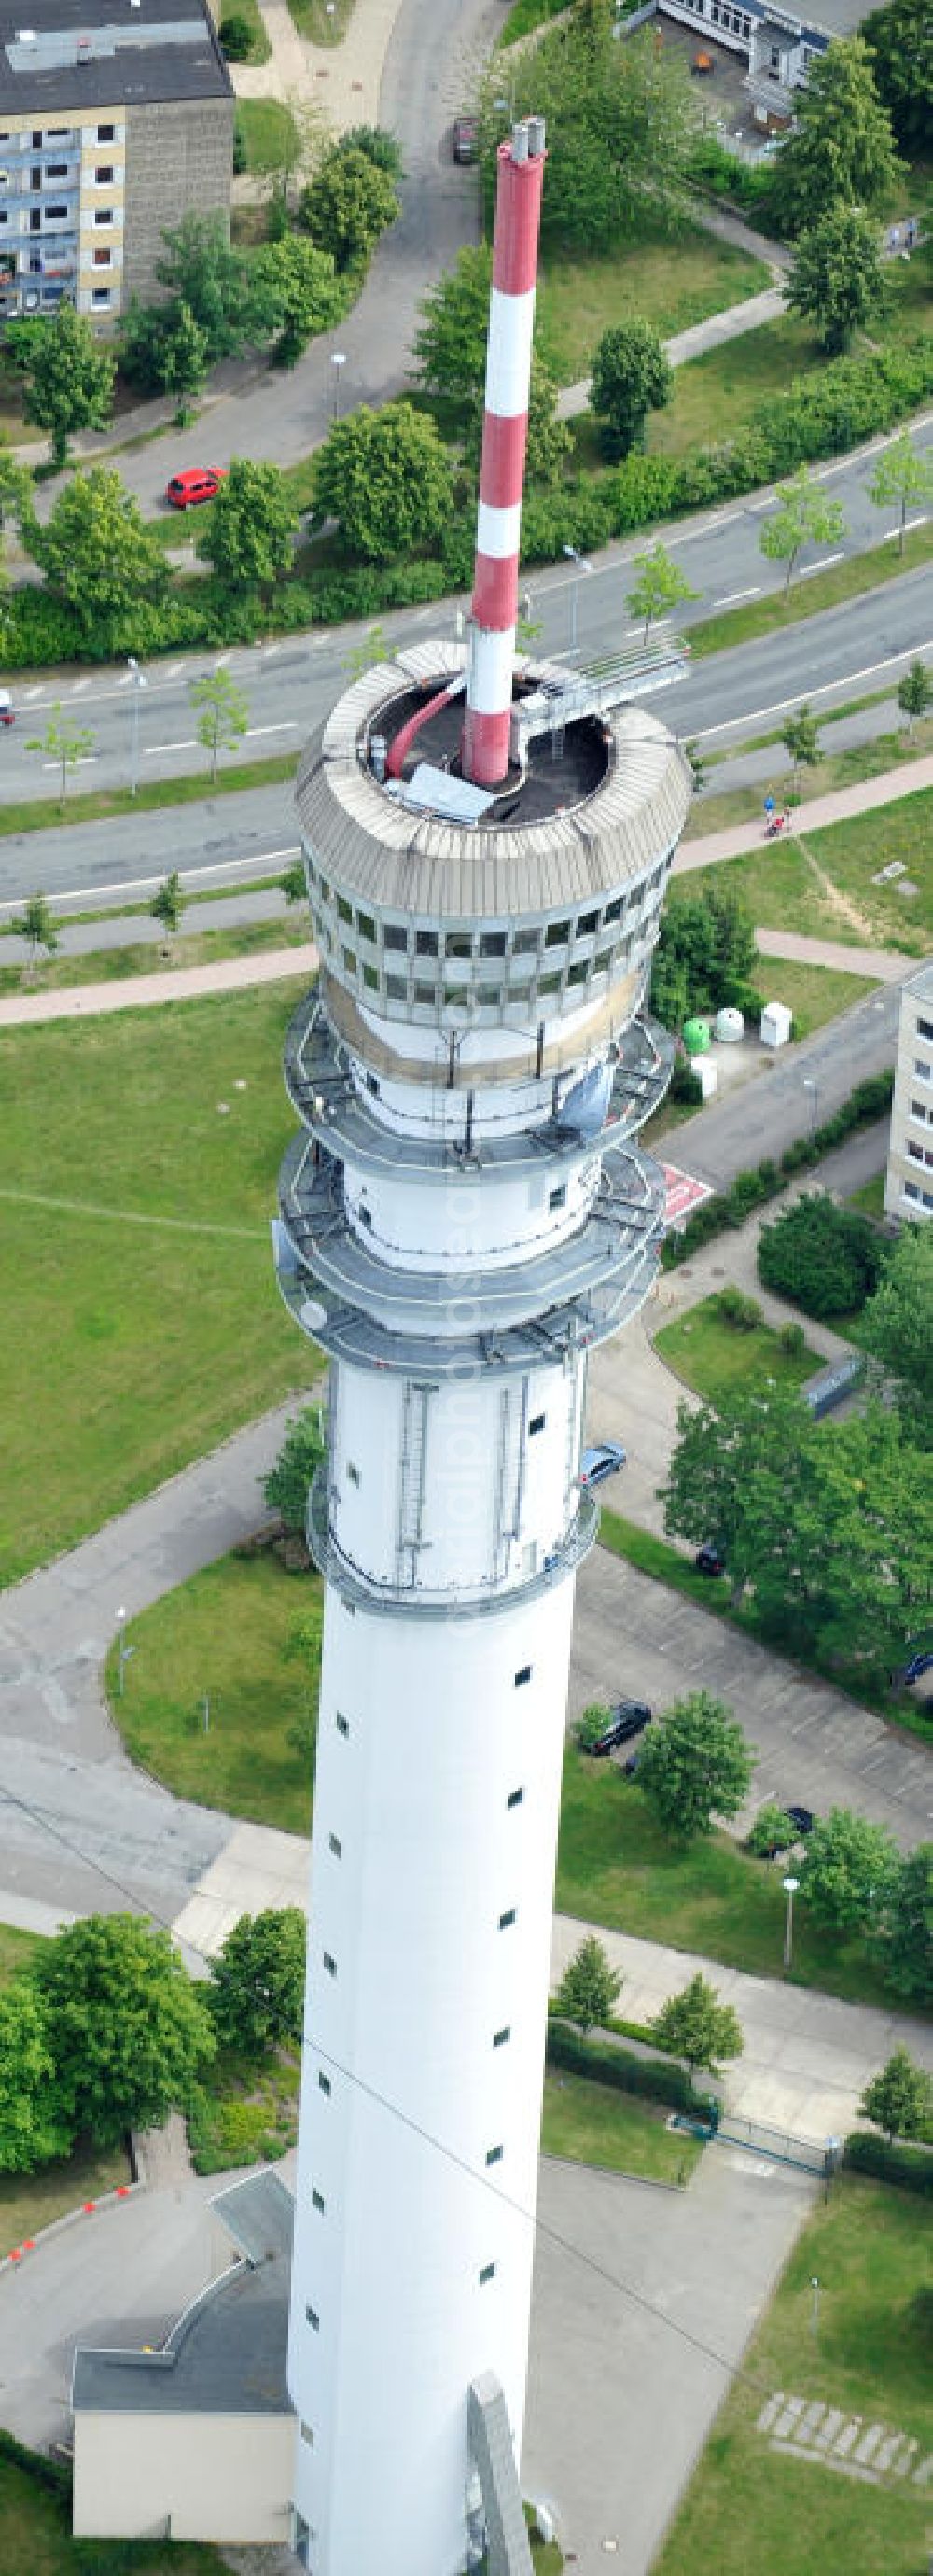 Aerial image Schwerin - Blick auf den Fernsehturm Schwerin Zippendorf inmitten des Wohngebietes / Plattenbaugebiet Großer Dreesch. View of the television tower in Schwerin.